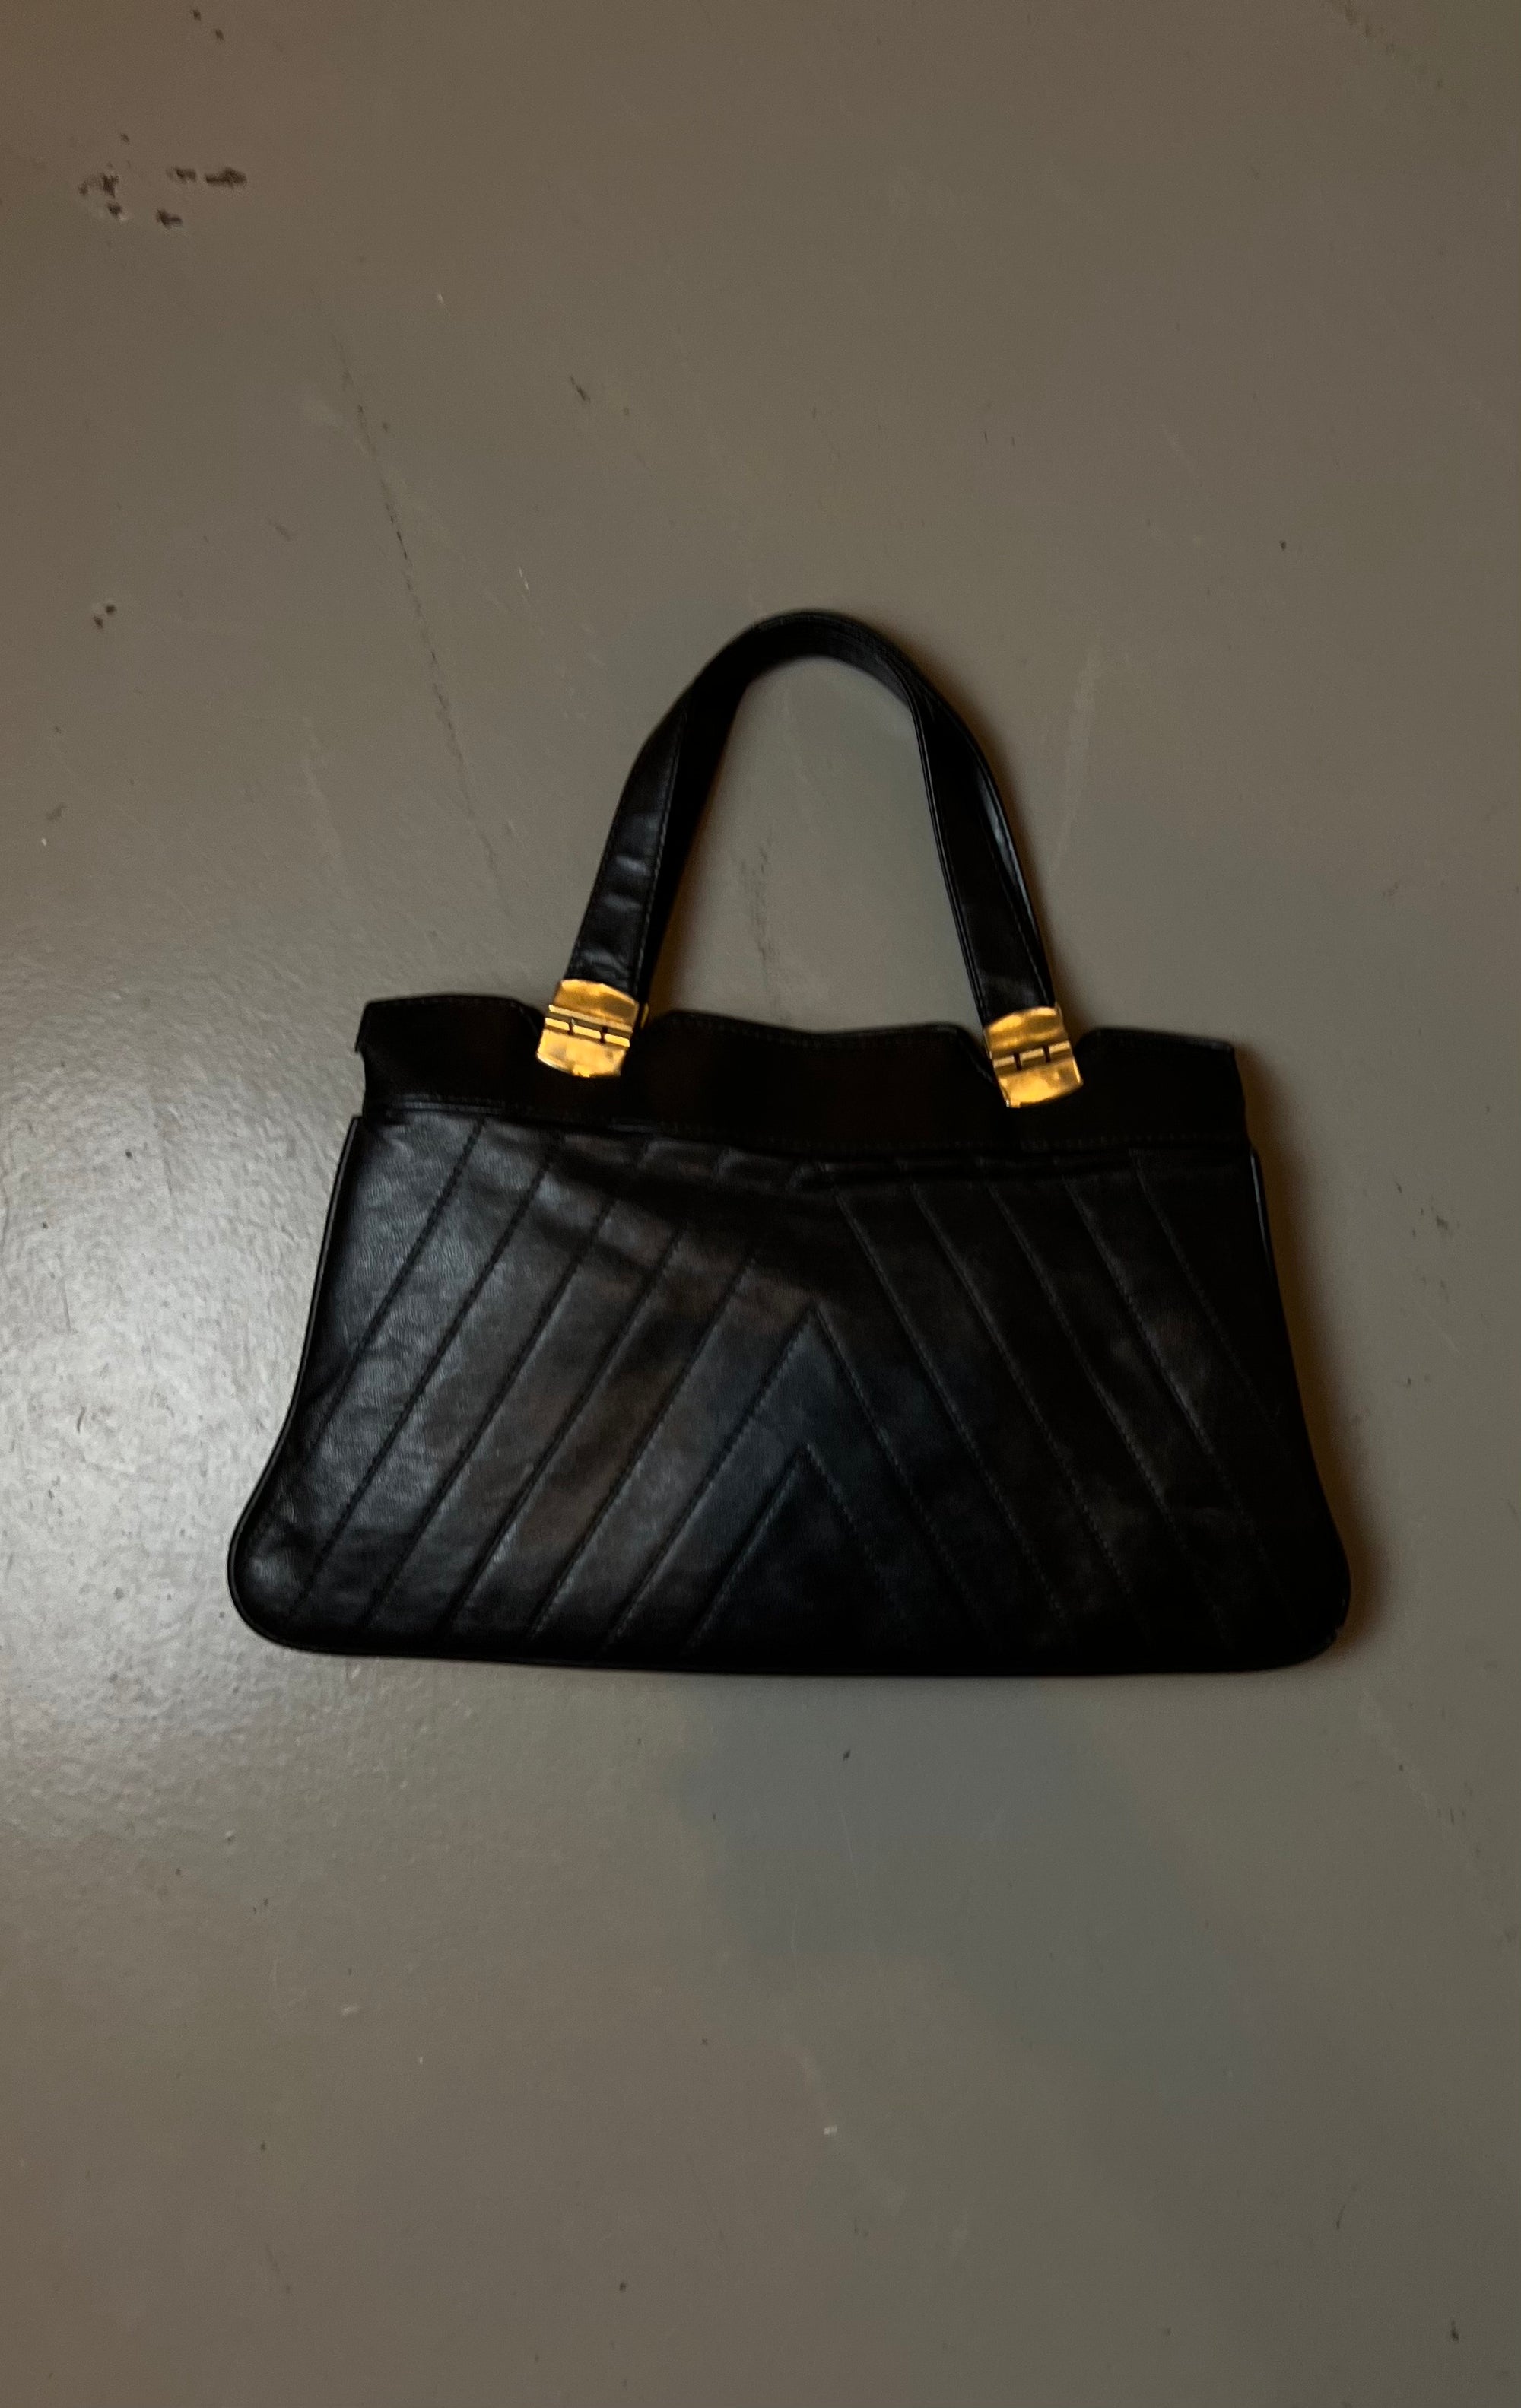 Vintage Classy Black Leather Bag